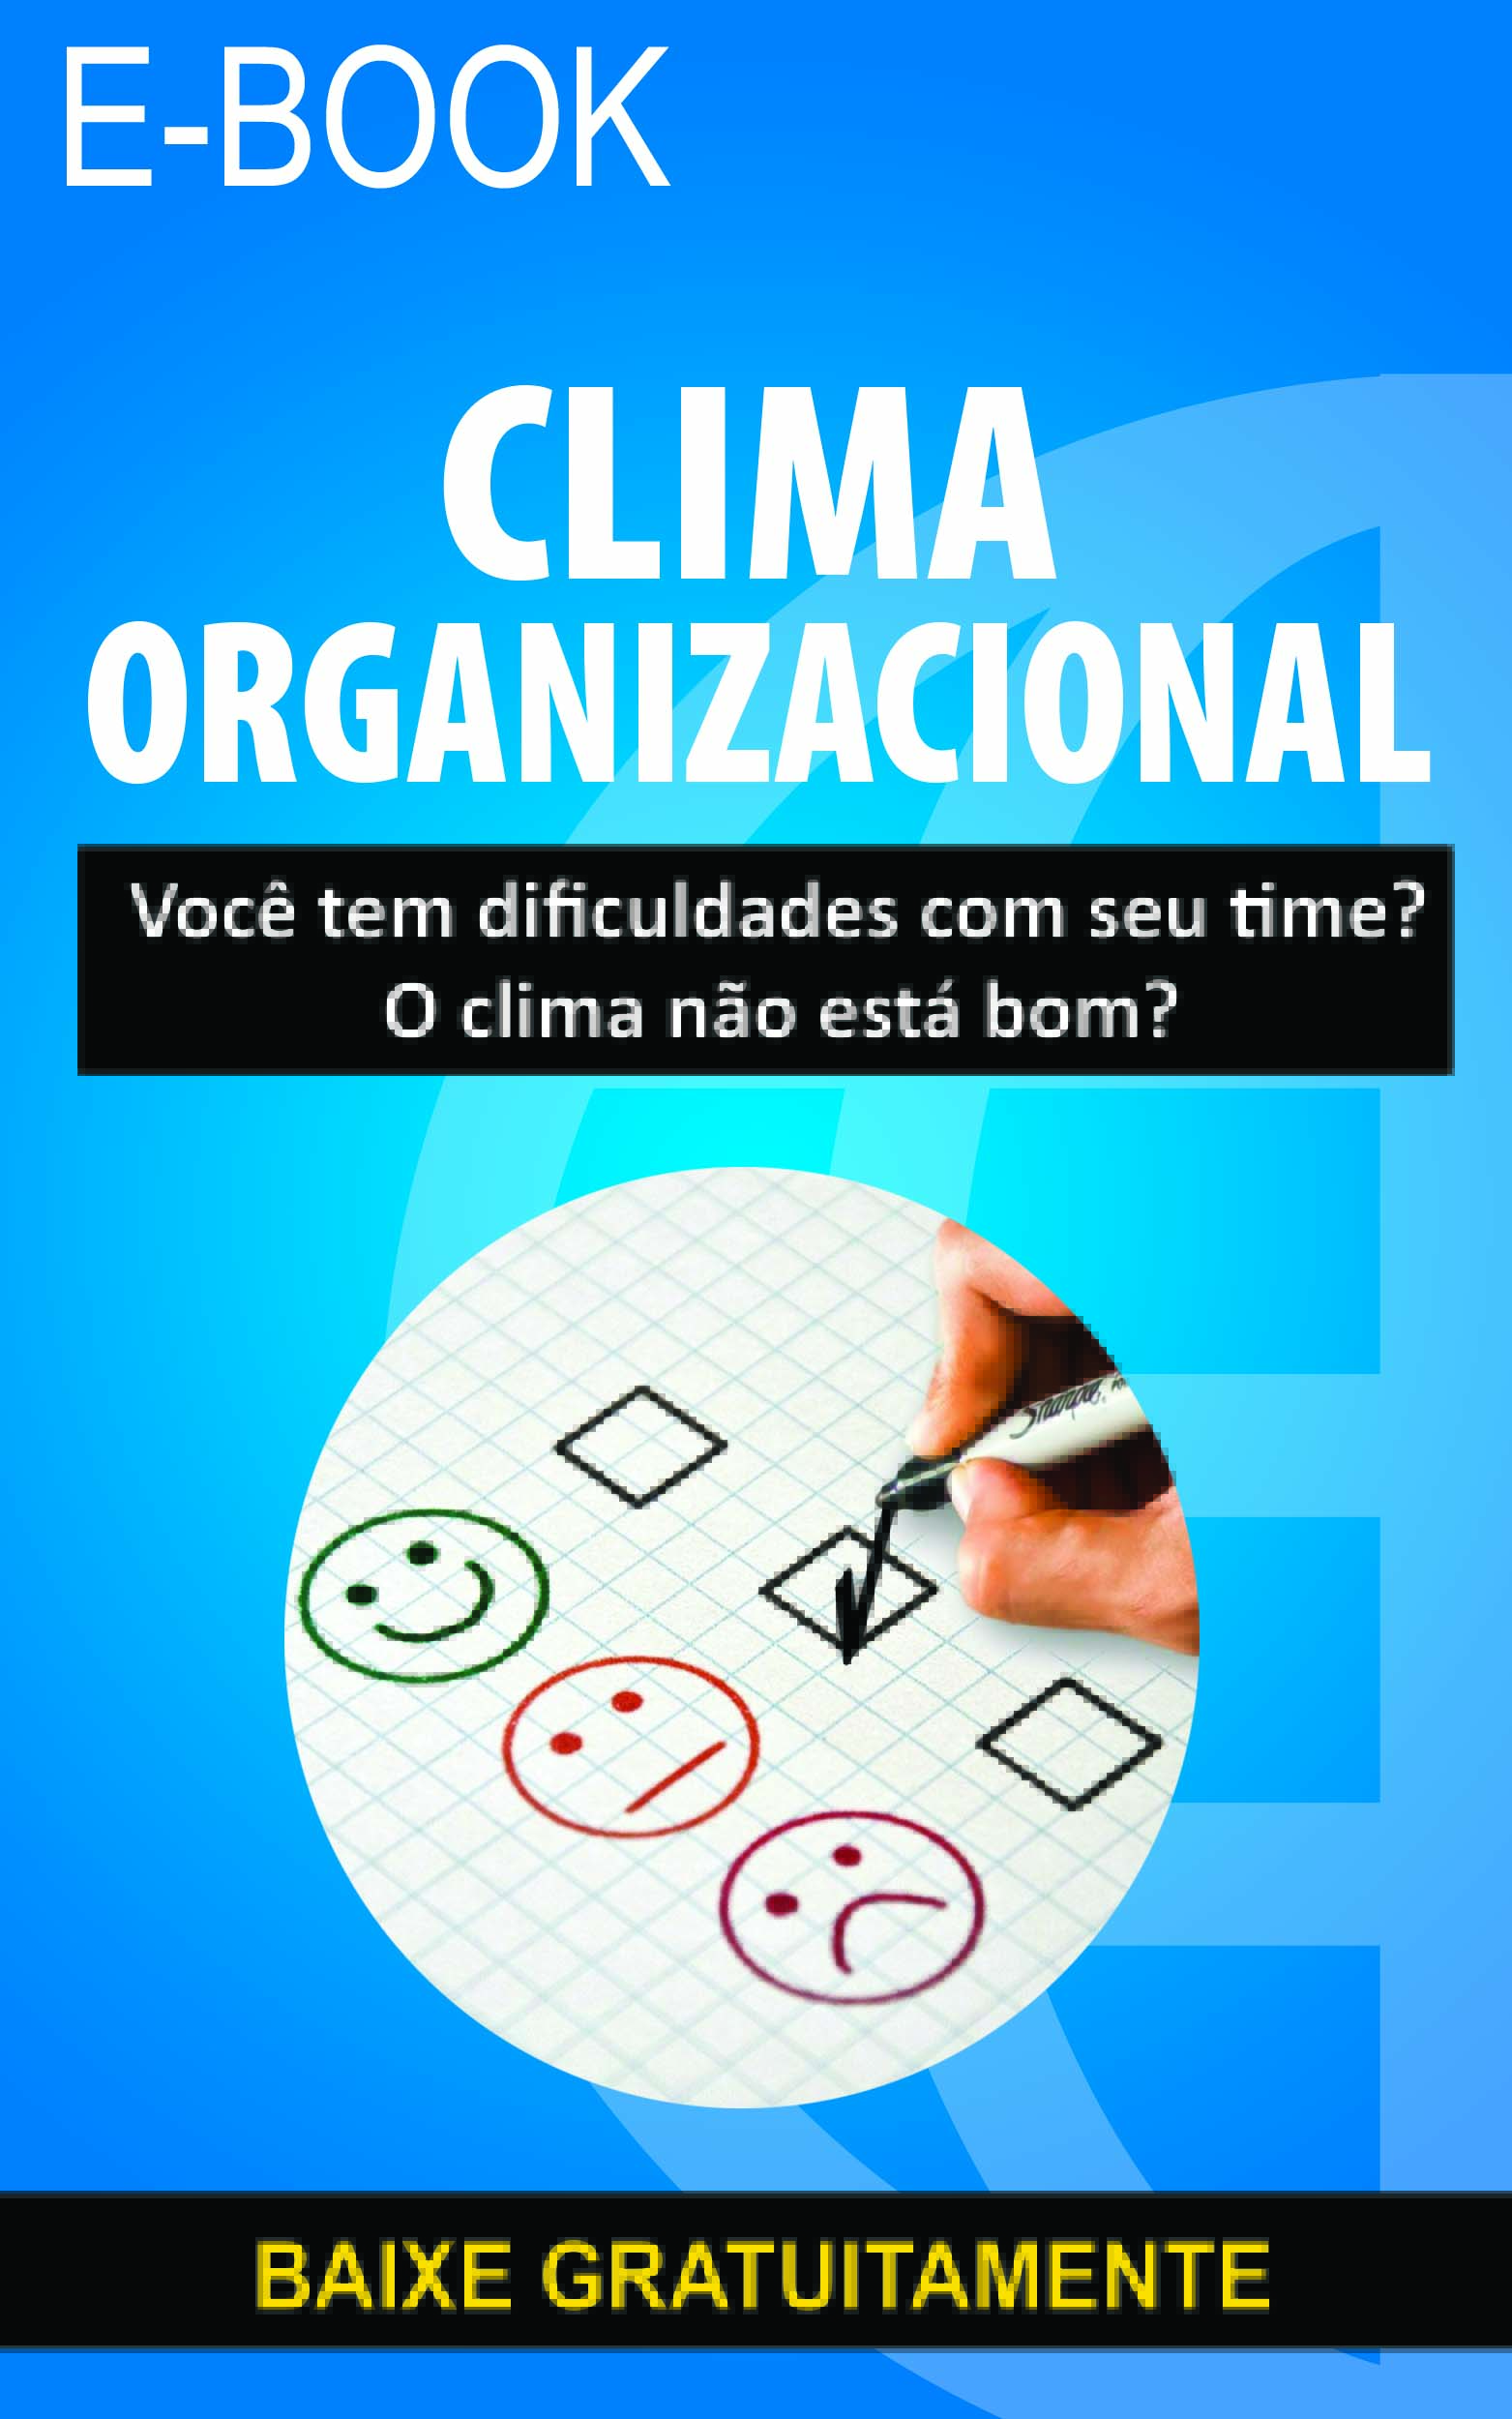 E-book Clima Organizacional - Baixe Gratuitamente